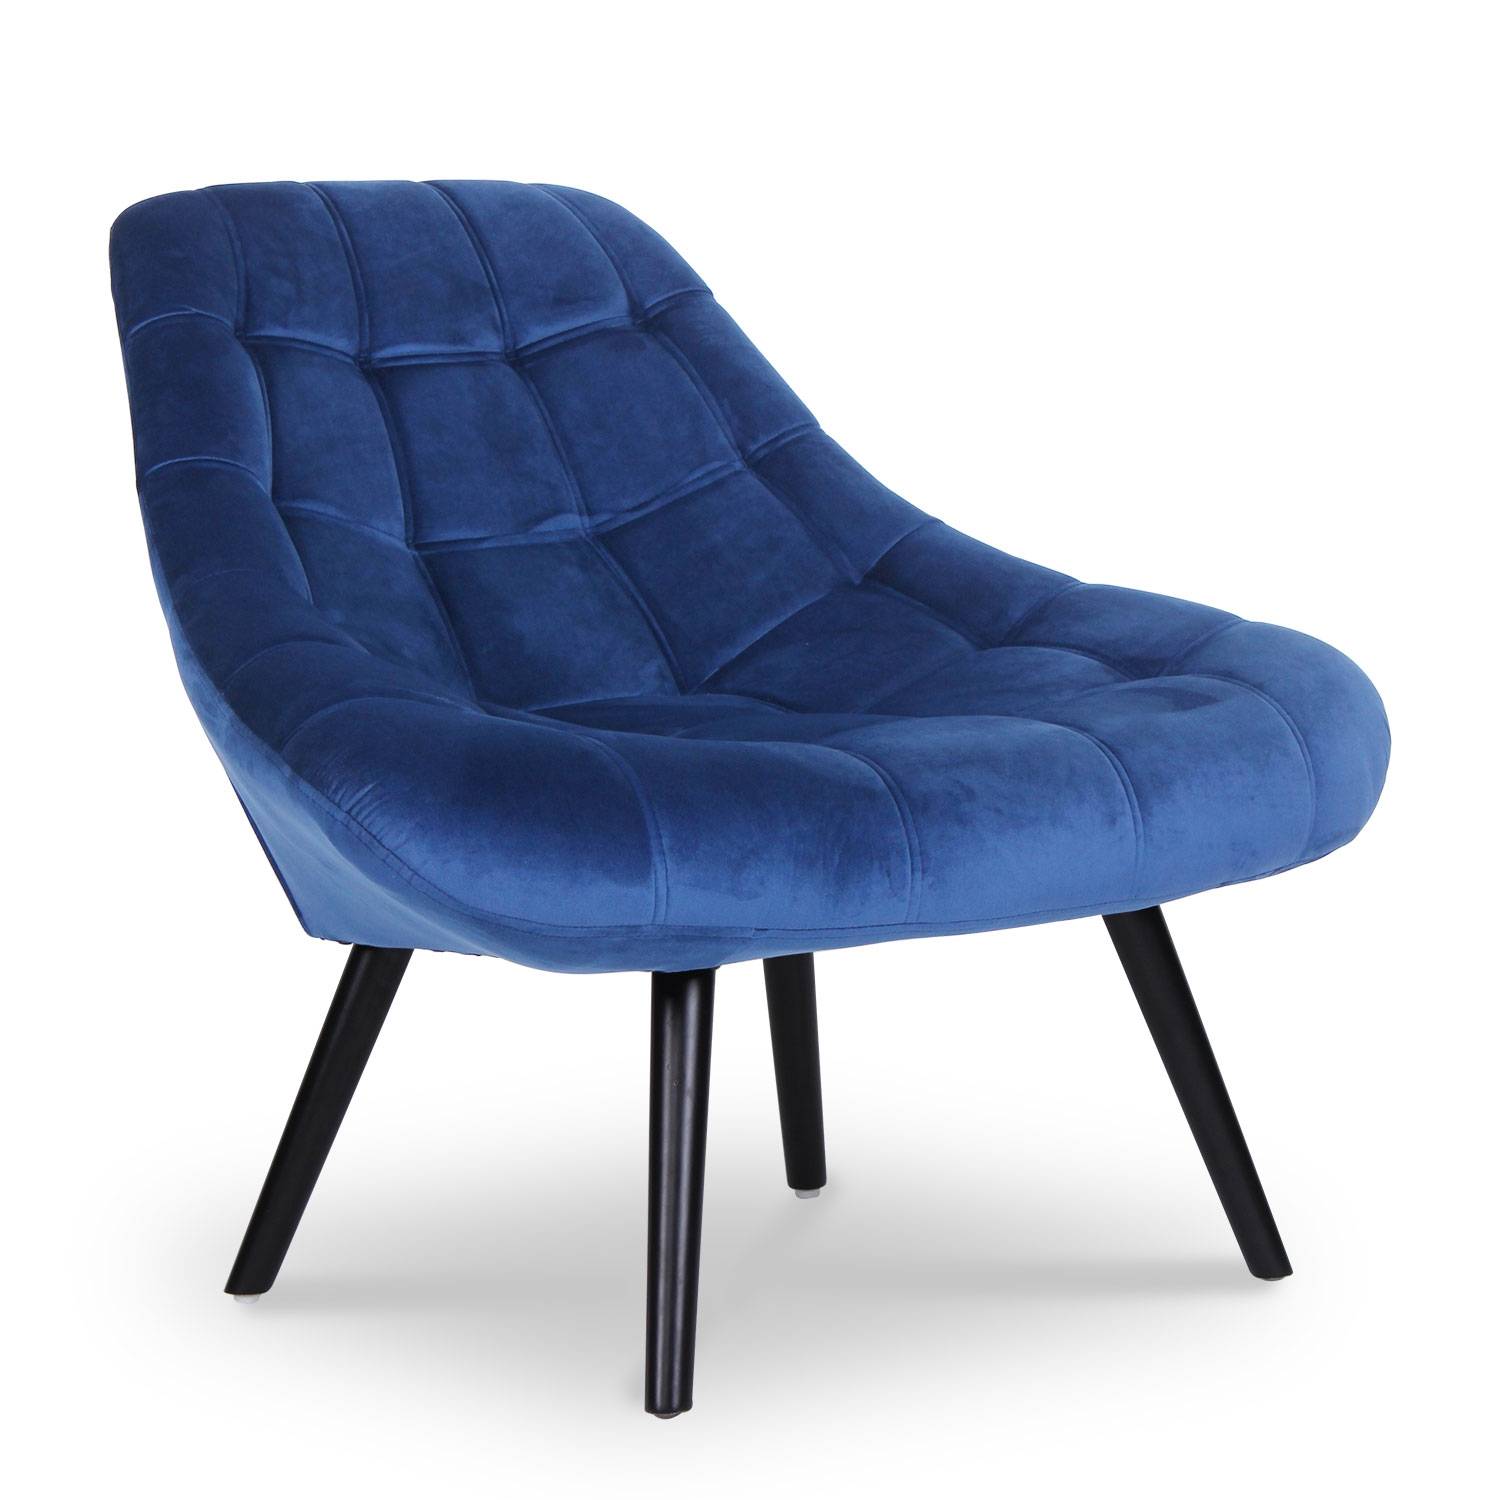 Danios fauteuil blauw fluweel